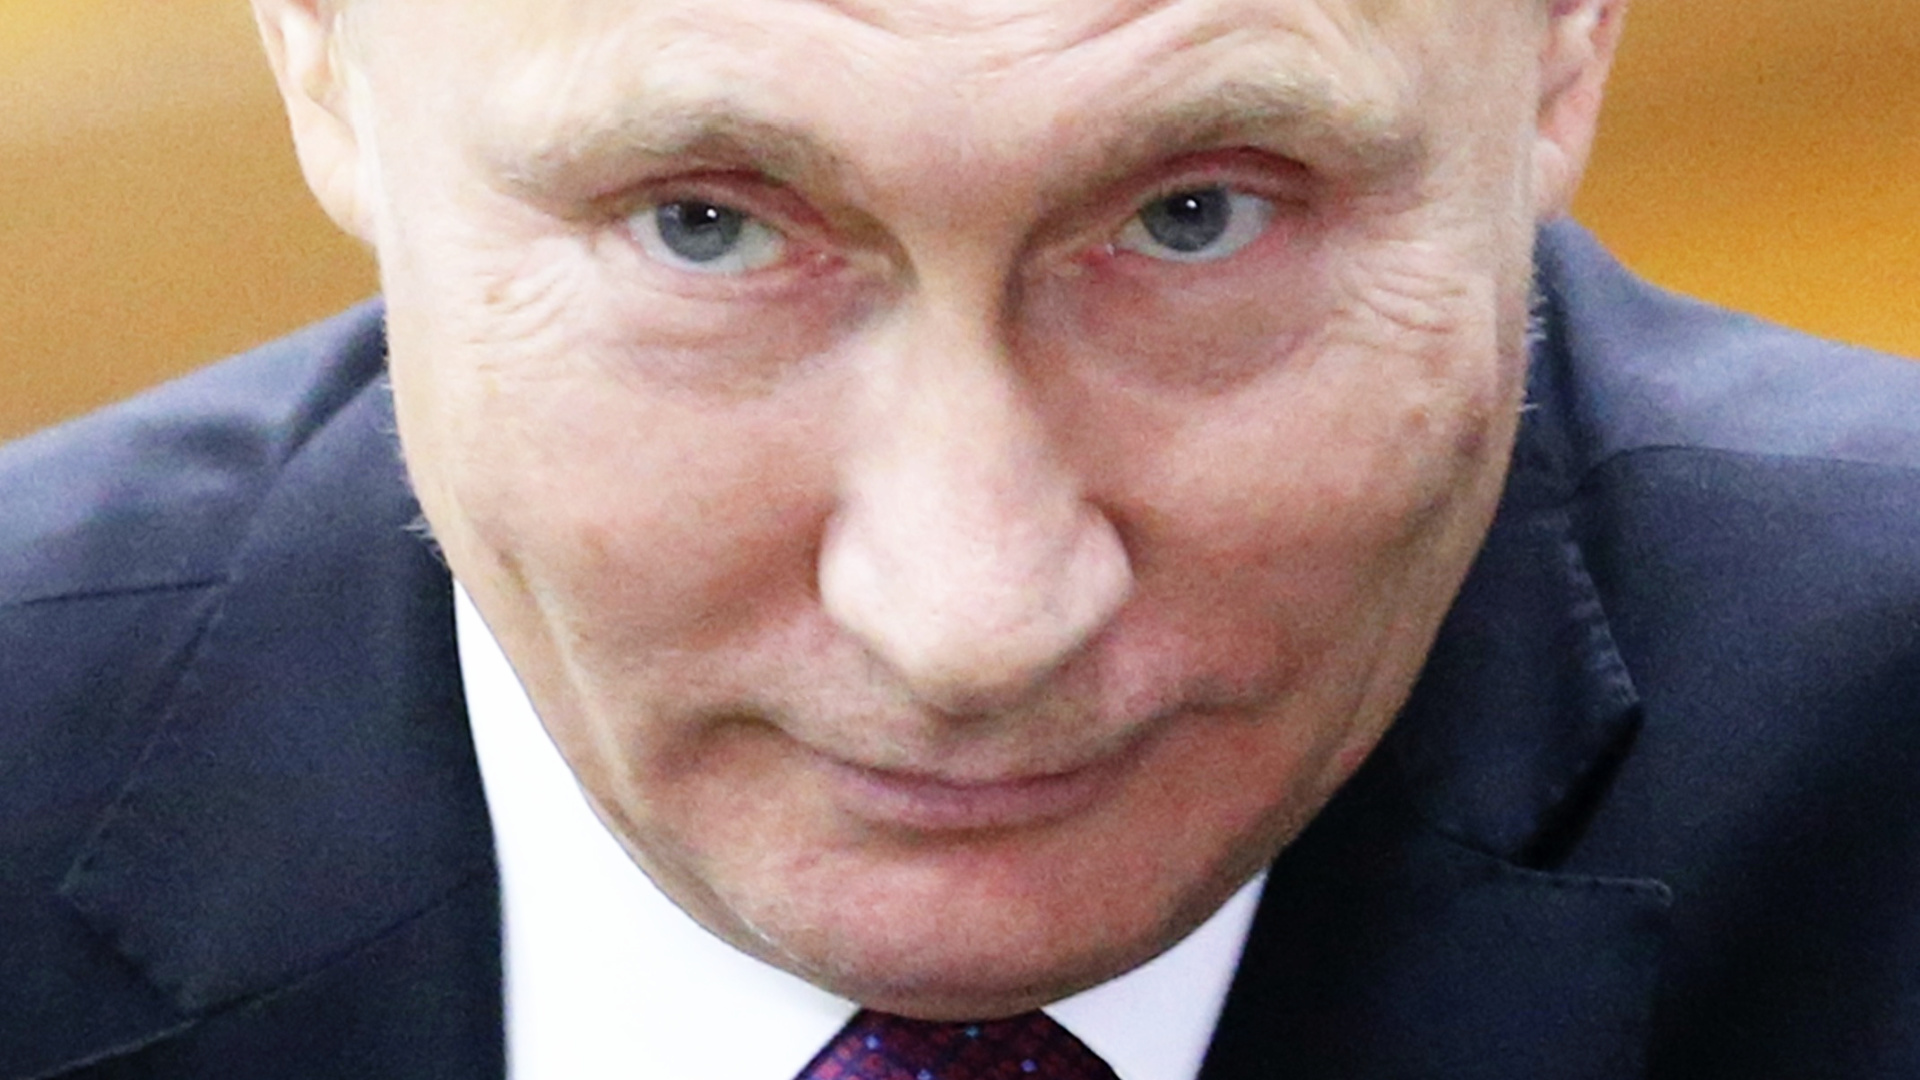 Putin verabschiedete 2013 ein strenges Gesetz